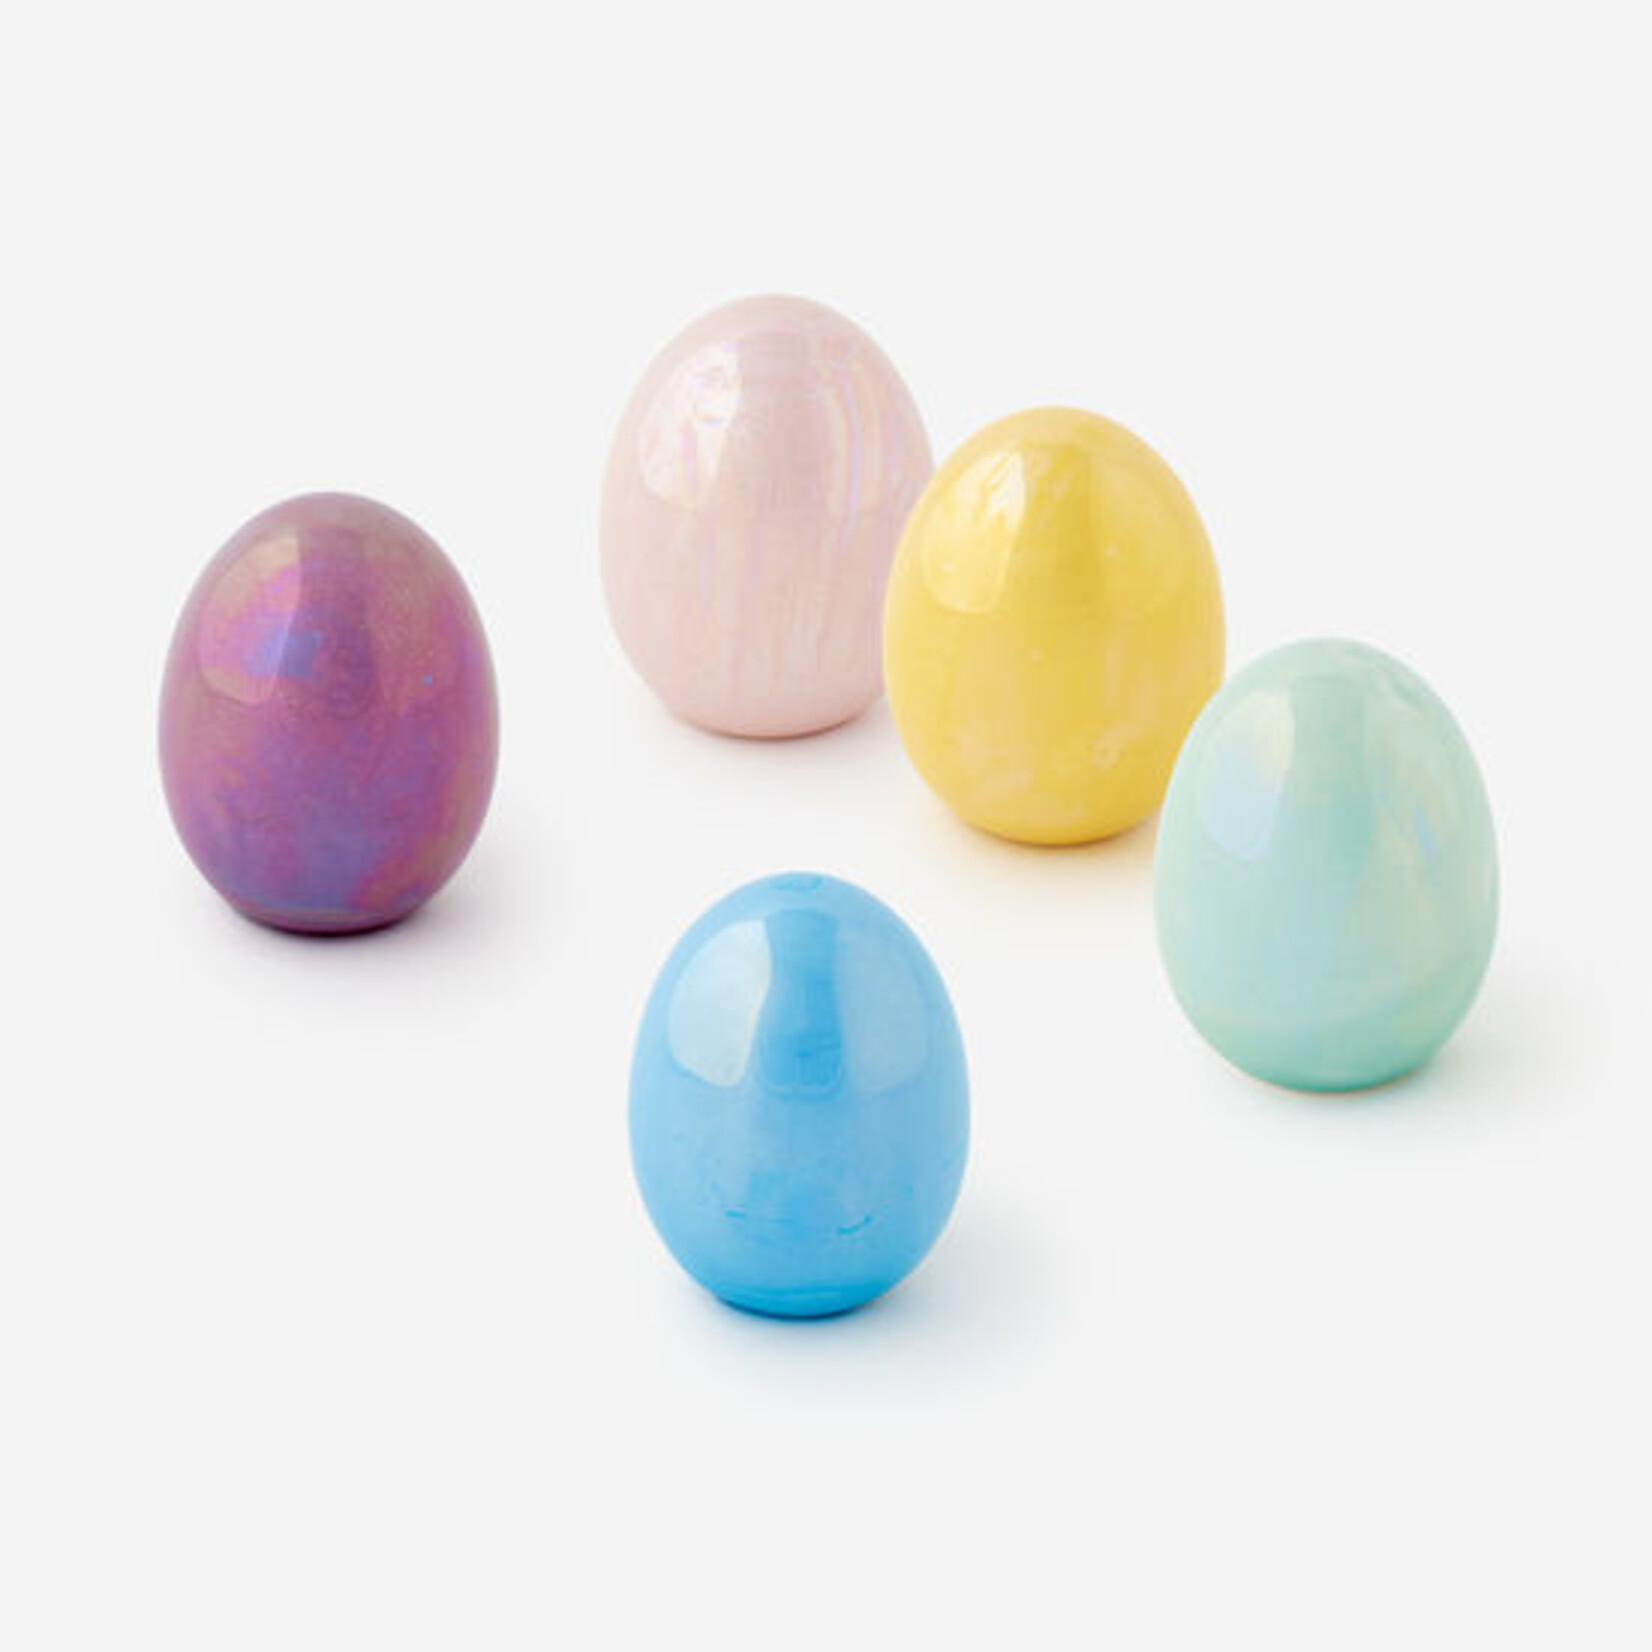 Iridescent Eggs